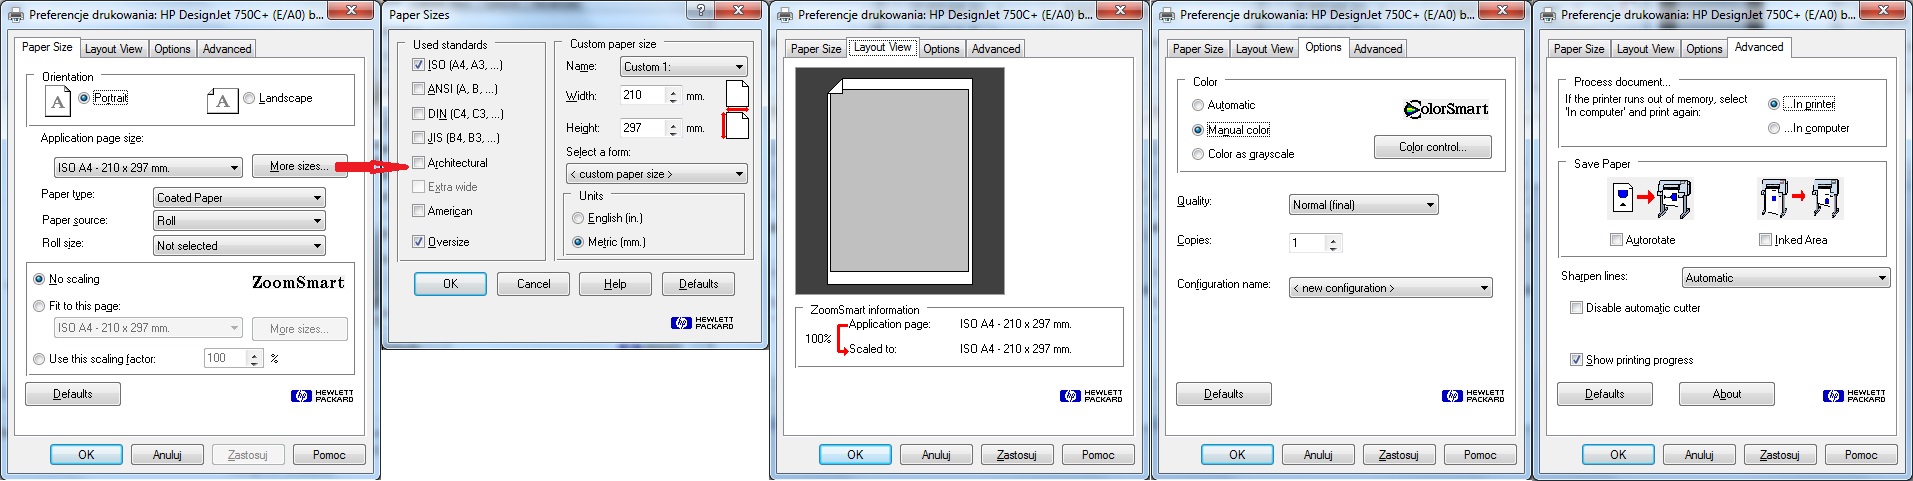 скачать драйвер для принтера hp deskjet для windows 7